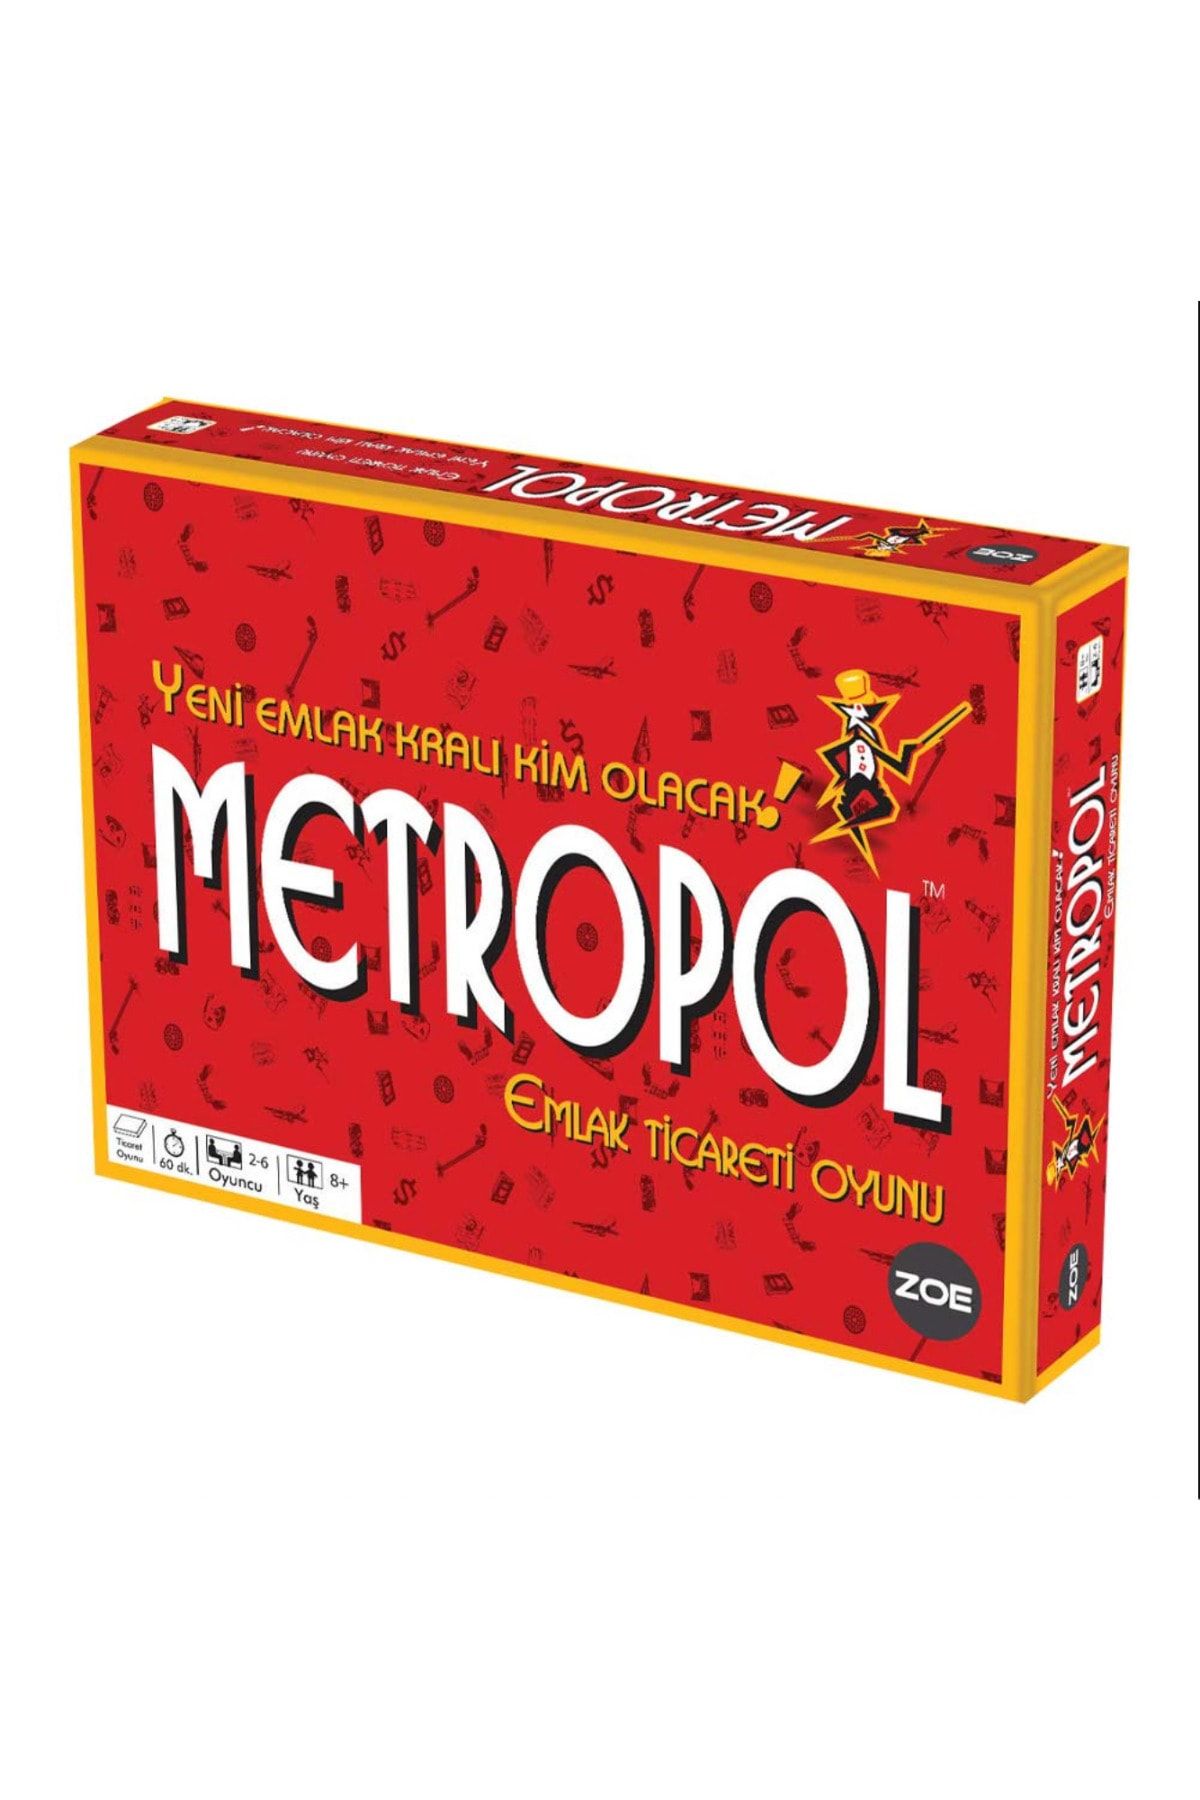 ONURPZL Emlak Ticareti Aile Oyunu- Metropol